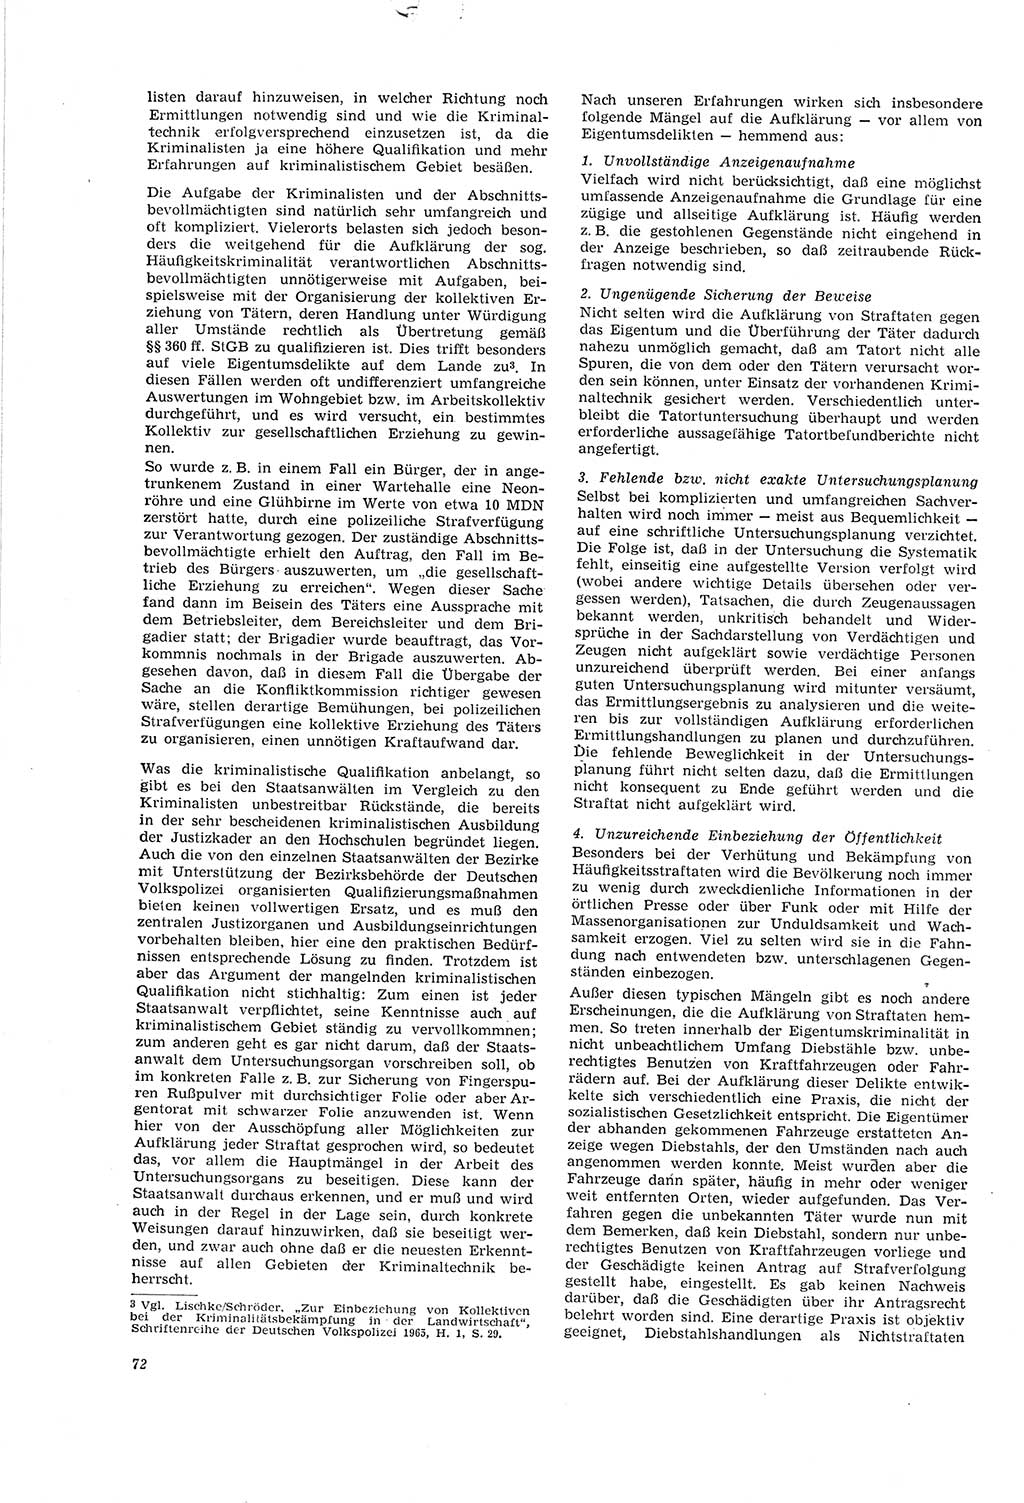 Neue Justiz (NJ), Zeitschrift für Recht und Rechtswissenschaft [Deutsche Demokratische Republik (DDR)], 20. Jahrgang 1966, Seite 72 (NJ DDR 1966, S. 72)